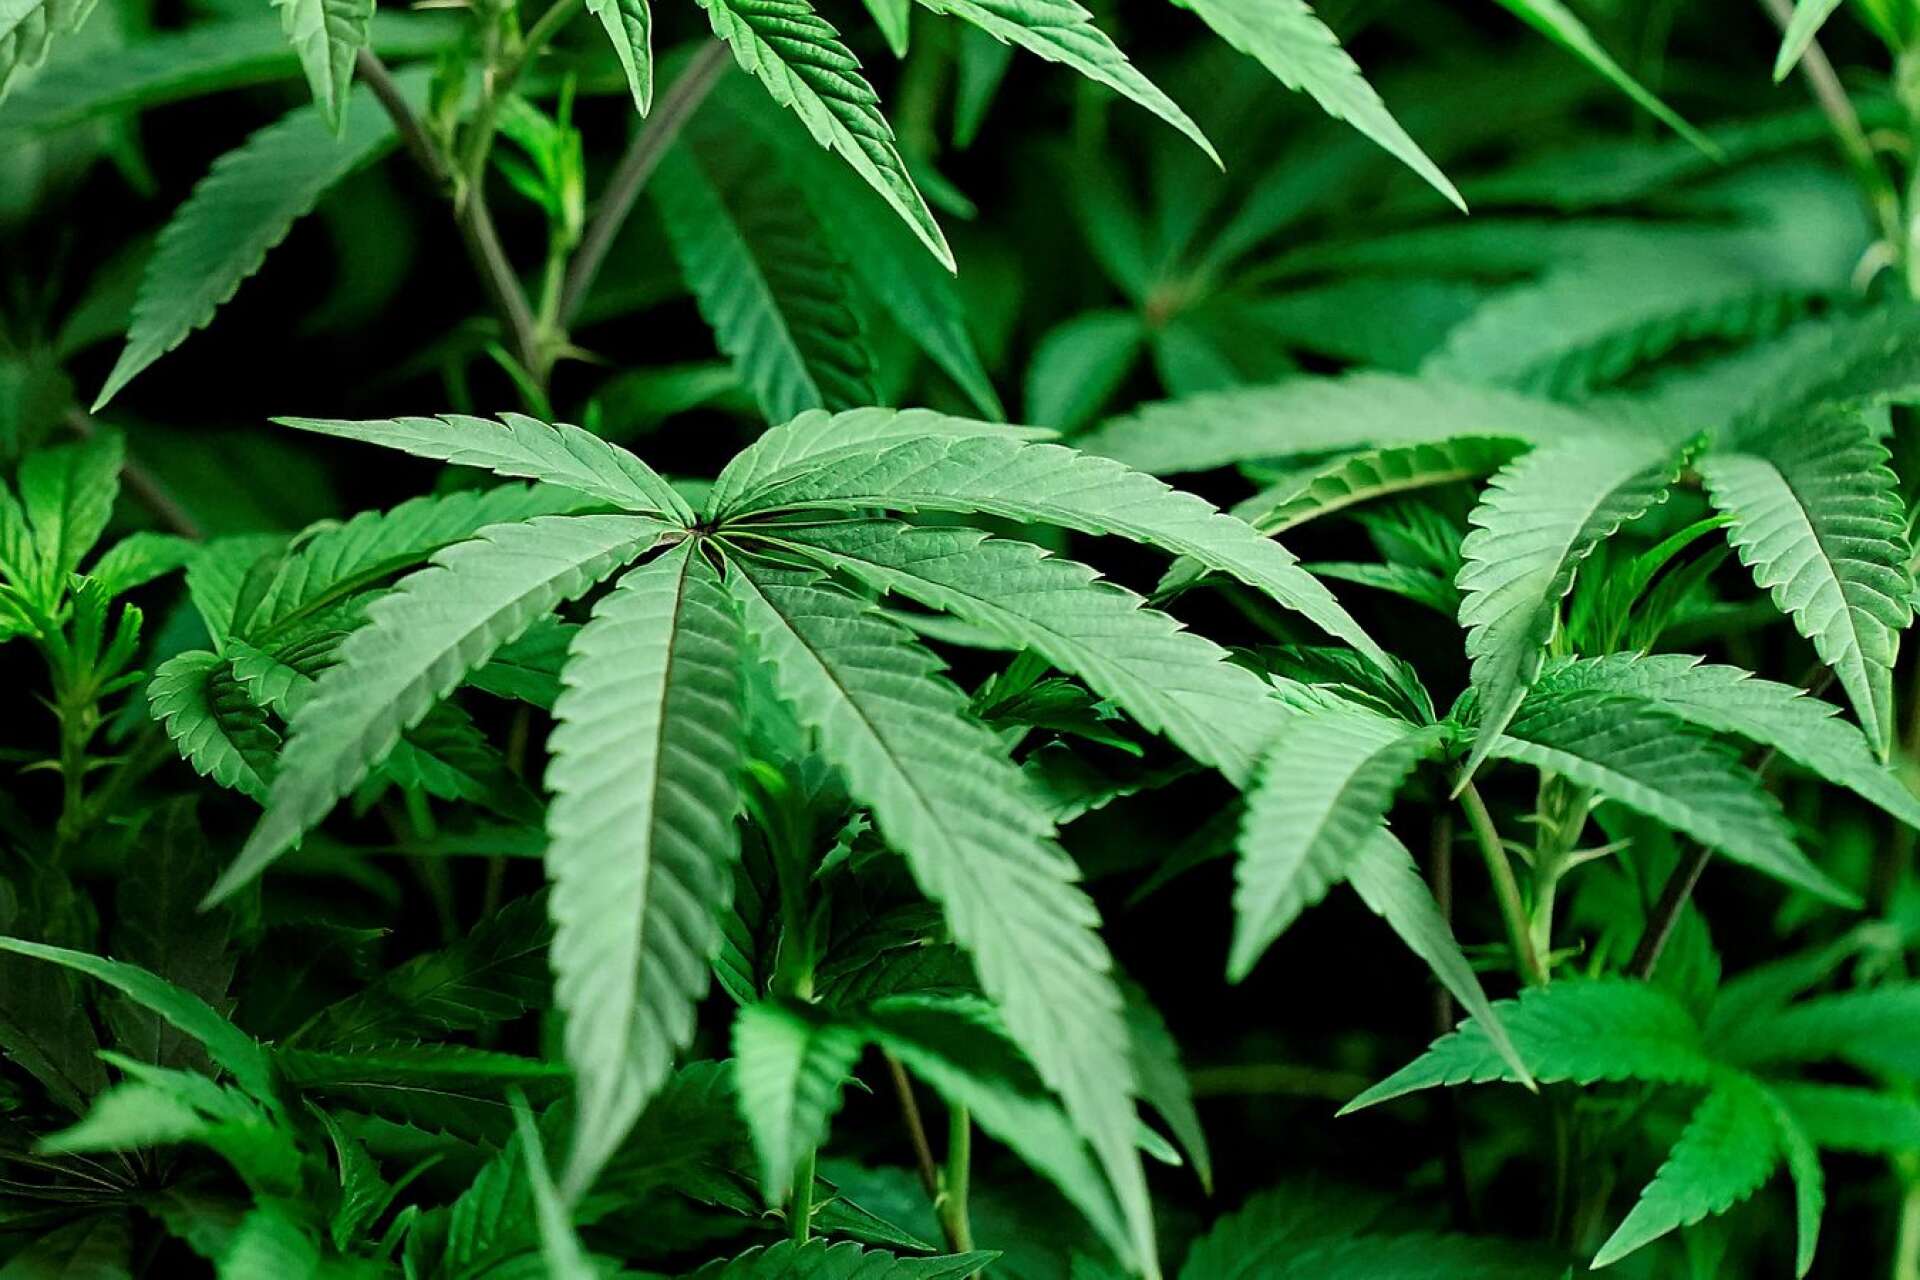 50 kilo cannabis beslagtogs i en knarkfabrik i en fastighet i Mellerud. Om odlingen fått växa klart kunde den ha givit 180 kilo. Plantorna på bilden har inget med texten att göra./ARKIVBILD